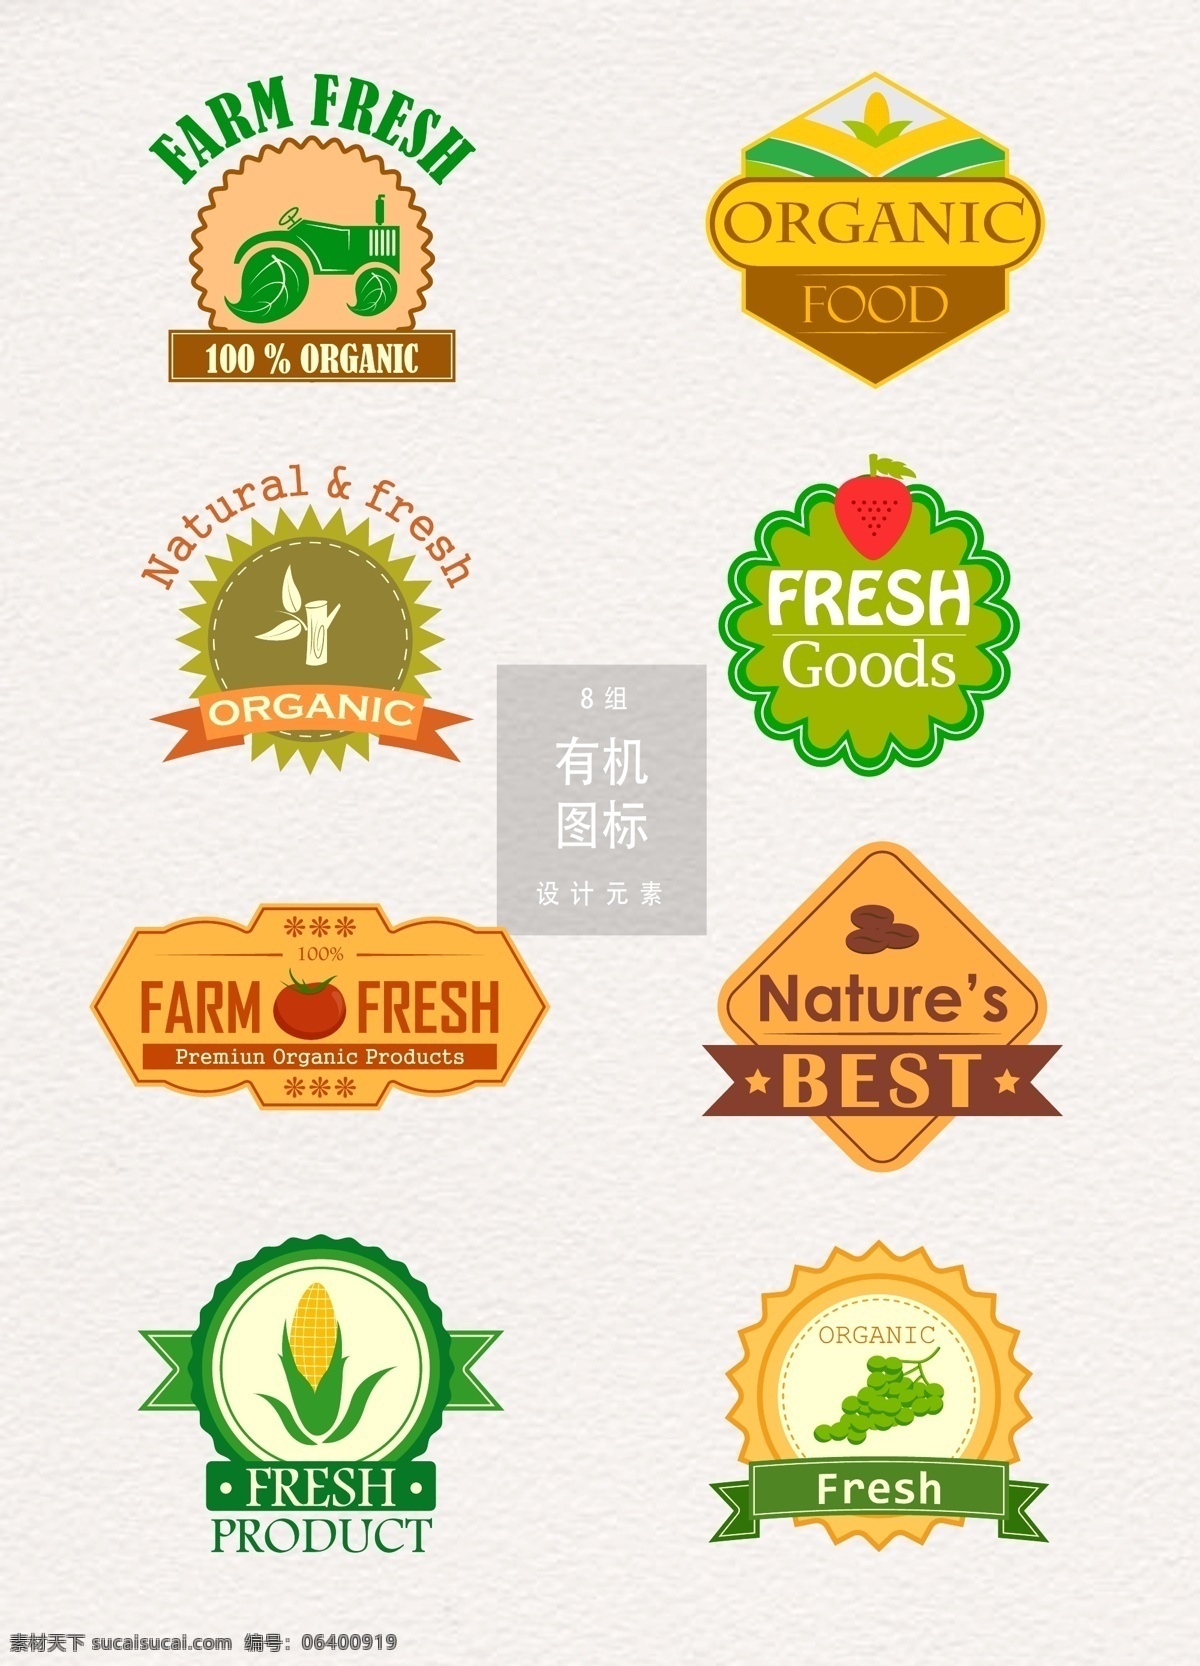 有机 食物 图标 图标设计 矢量素材 绿色 葡萄 ai素材 有机食物 有机食物图标 玉米 绿色有机